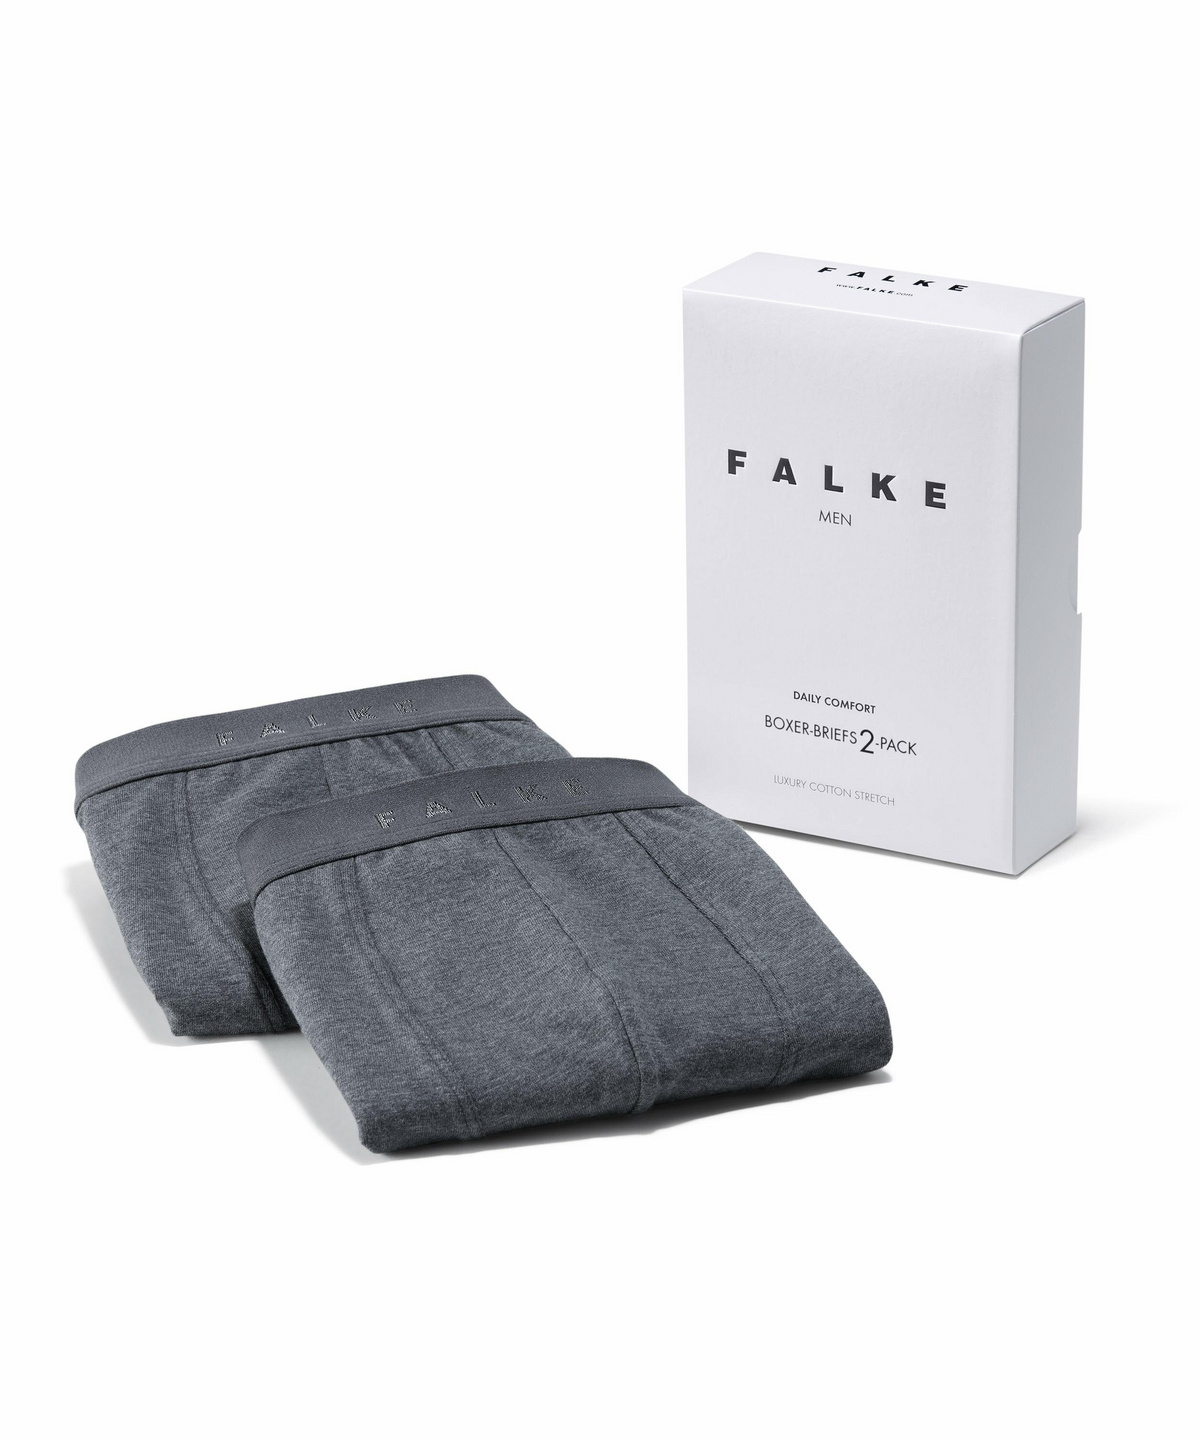 FALKE Unterwäsche Daily Comfort Boxer-Briefs 2-Pack Baumwolle Herren schwarz weiß weitere Farben bequeme Unterhose mit Stretch atmungsaktiv elastischer Gummibund im Doppelpack 2 Stück 